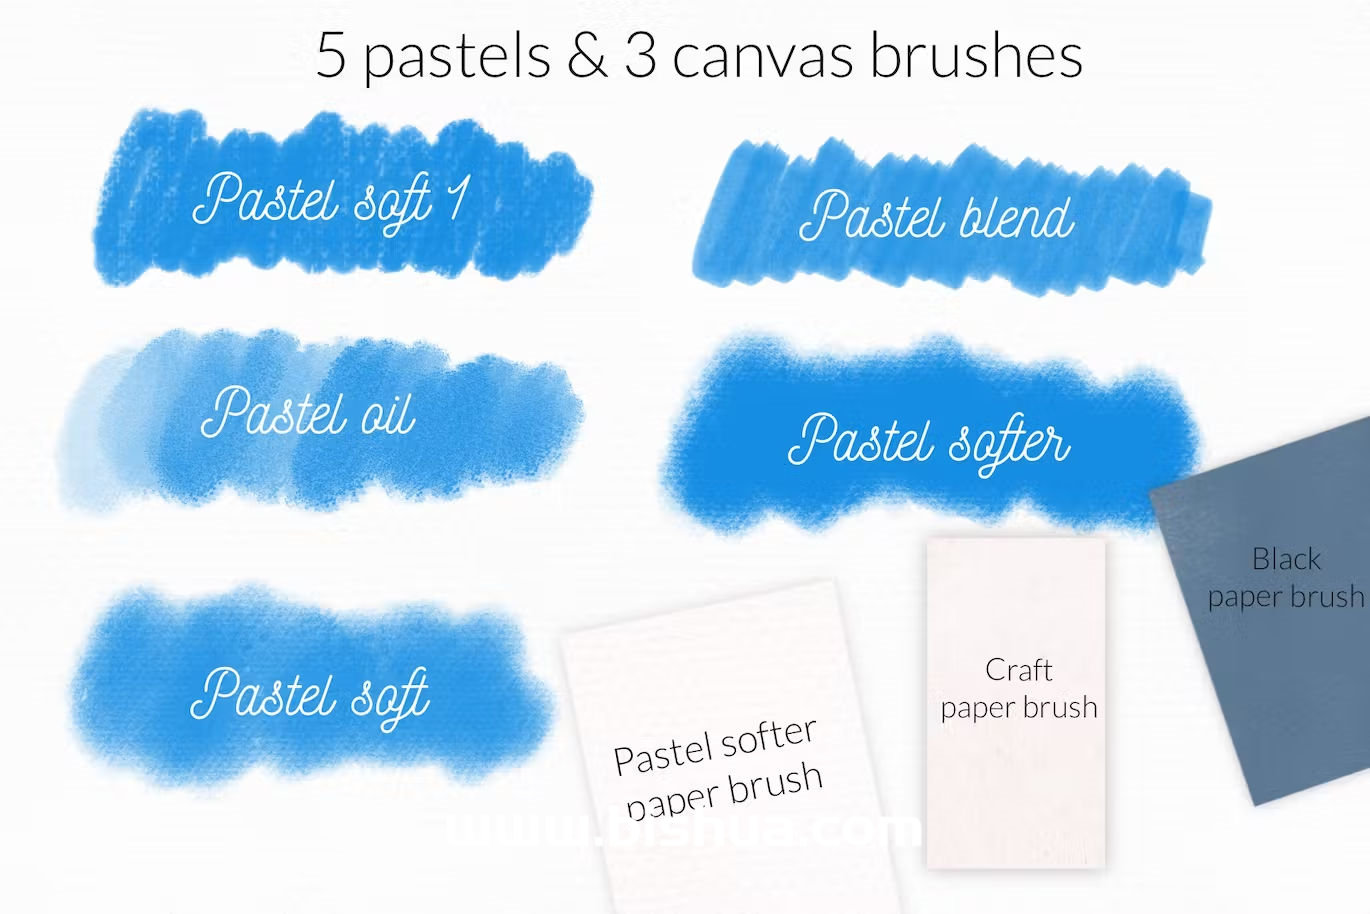 Procreate笔刷+色卡丨粉笔画笔质感创作